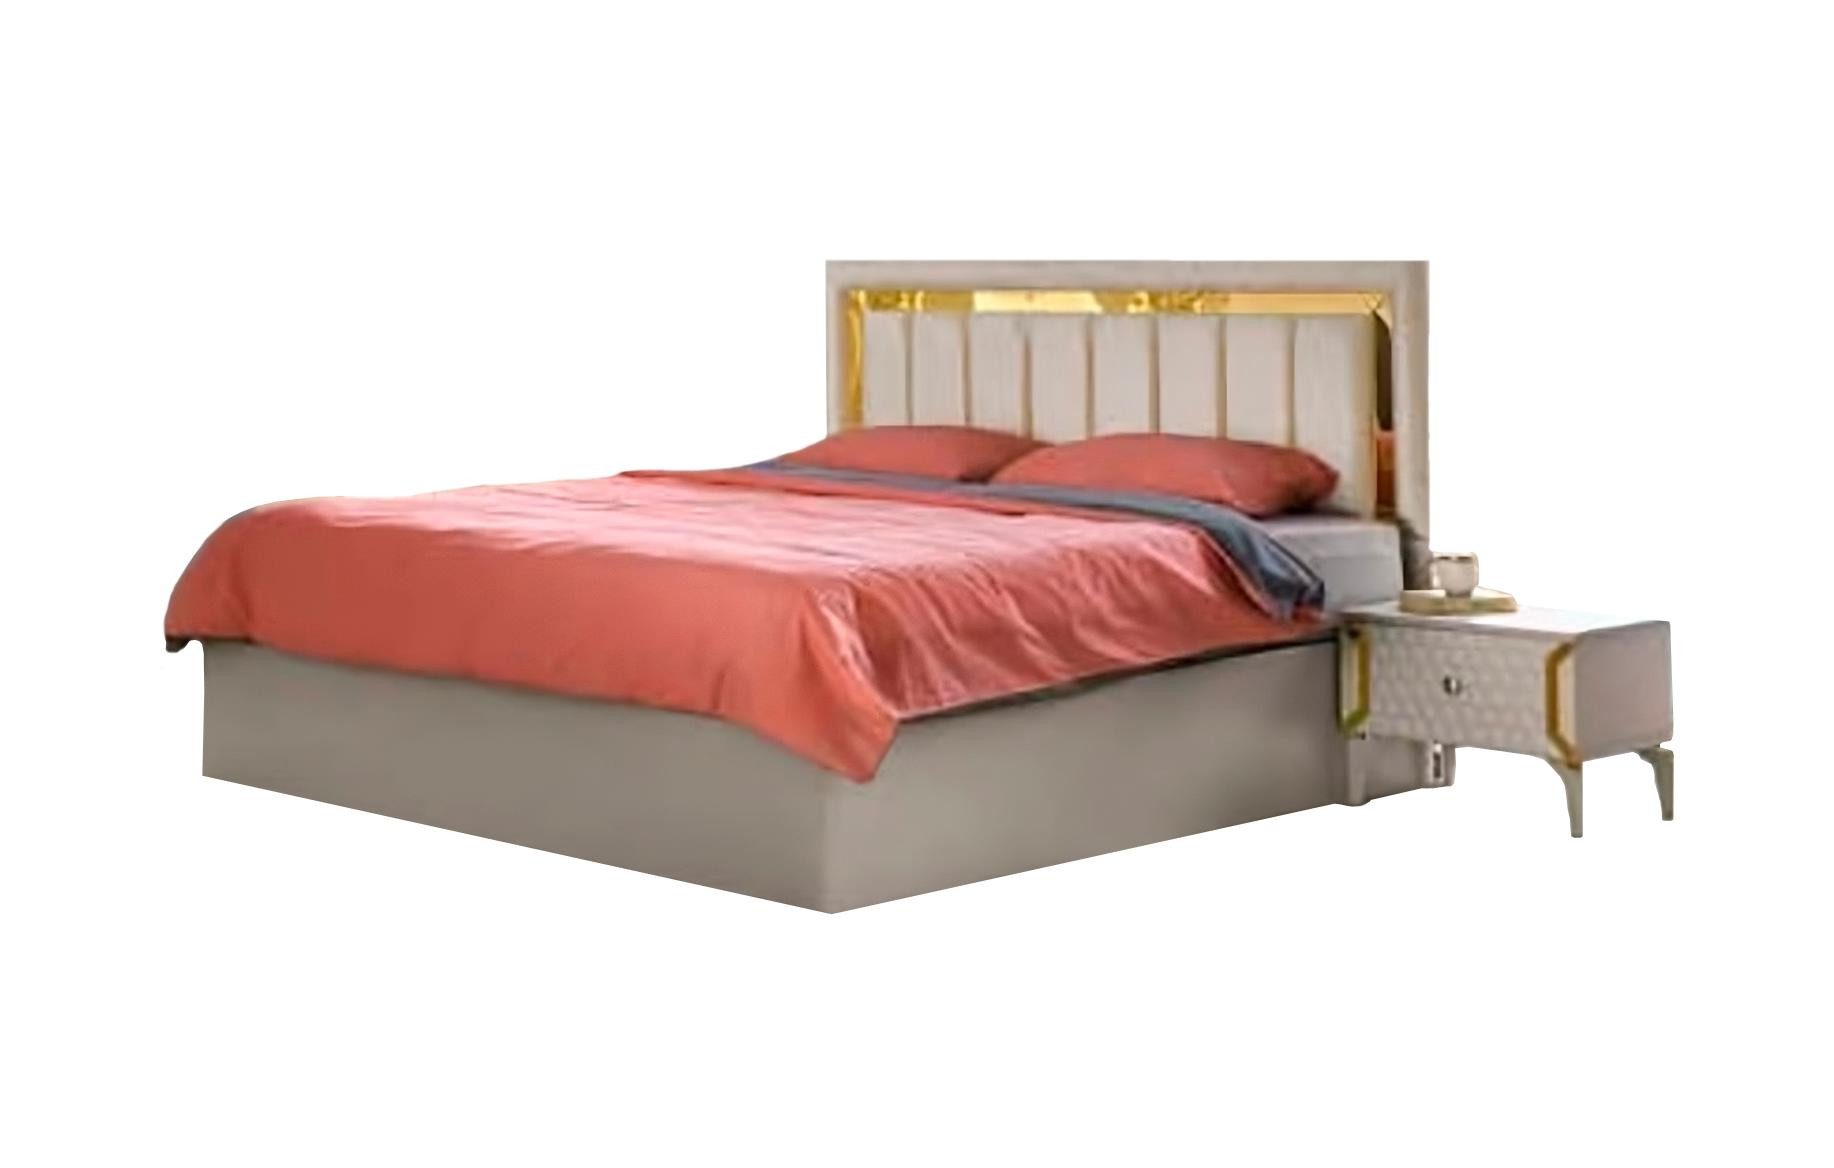 JVmoebel Bett Schlafzimmer Dopplebett Beige Einfarbig Modern Rechteckig Design Bett (1-tlg., Nur Bett), Made in Europa